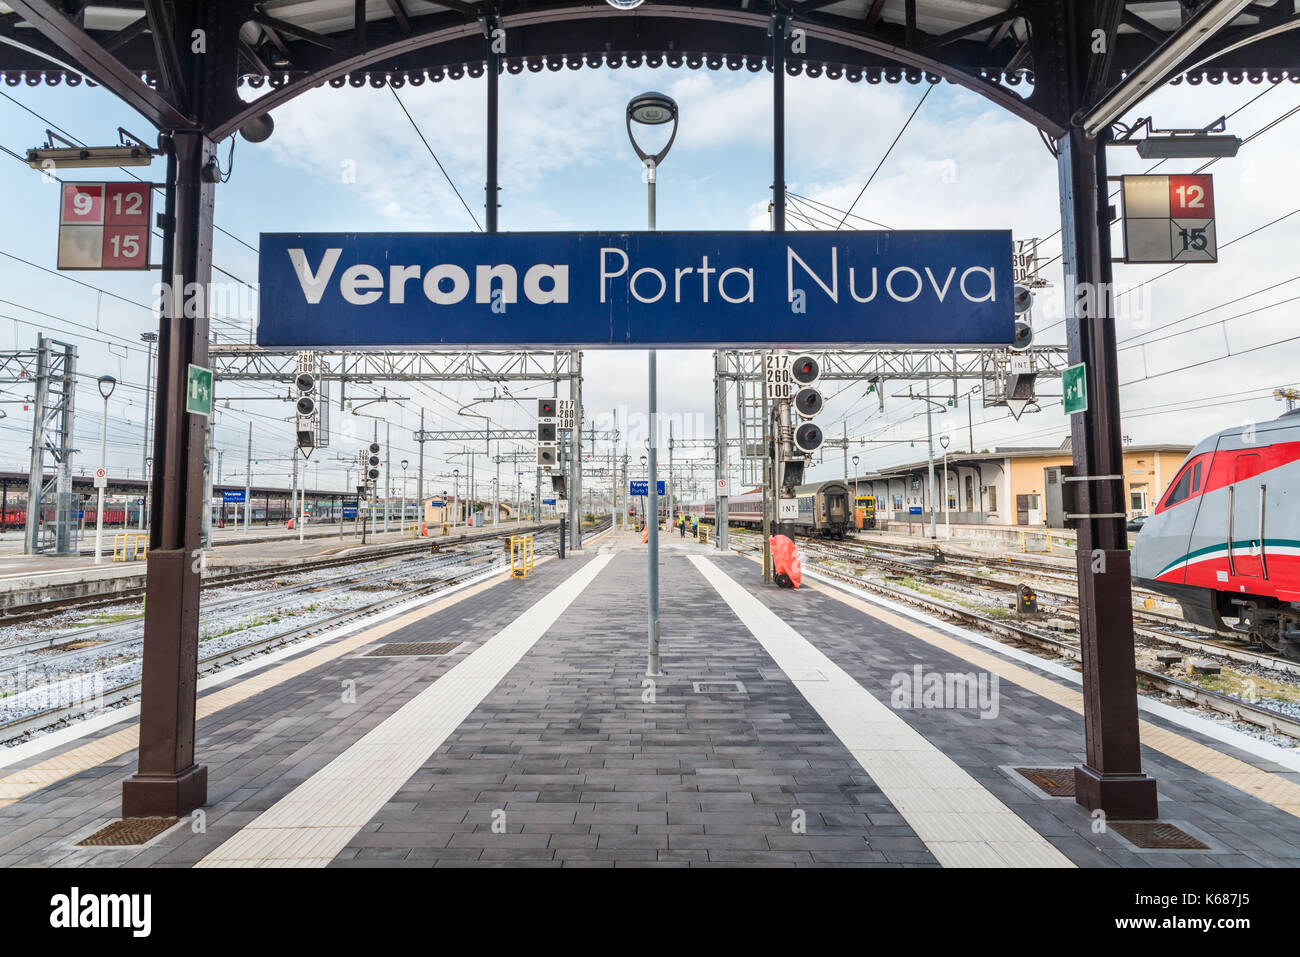 La stazione ferroviaria di Verona Porta Nuova in italia Foto stock - Alamy